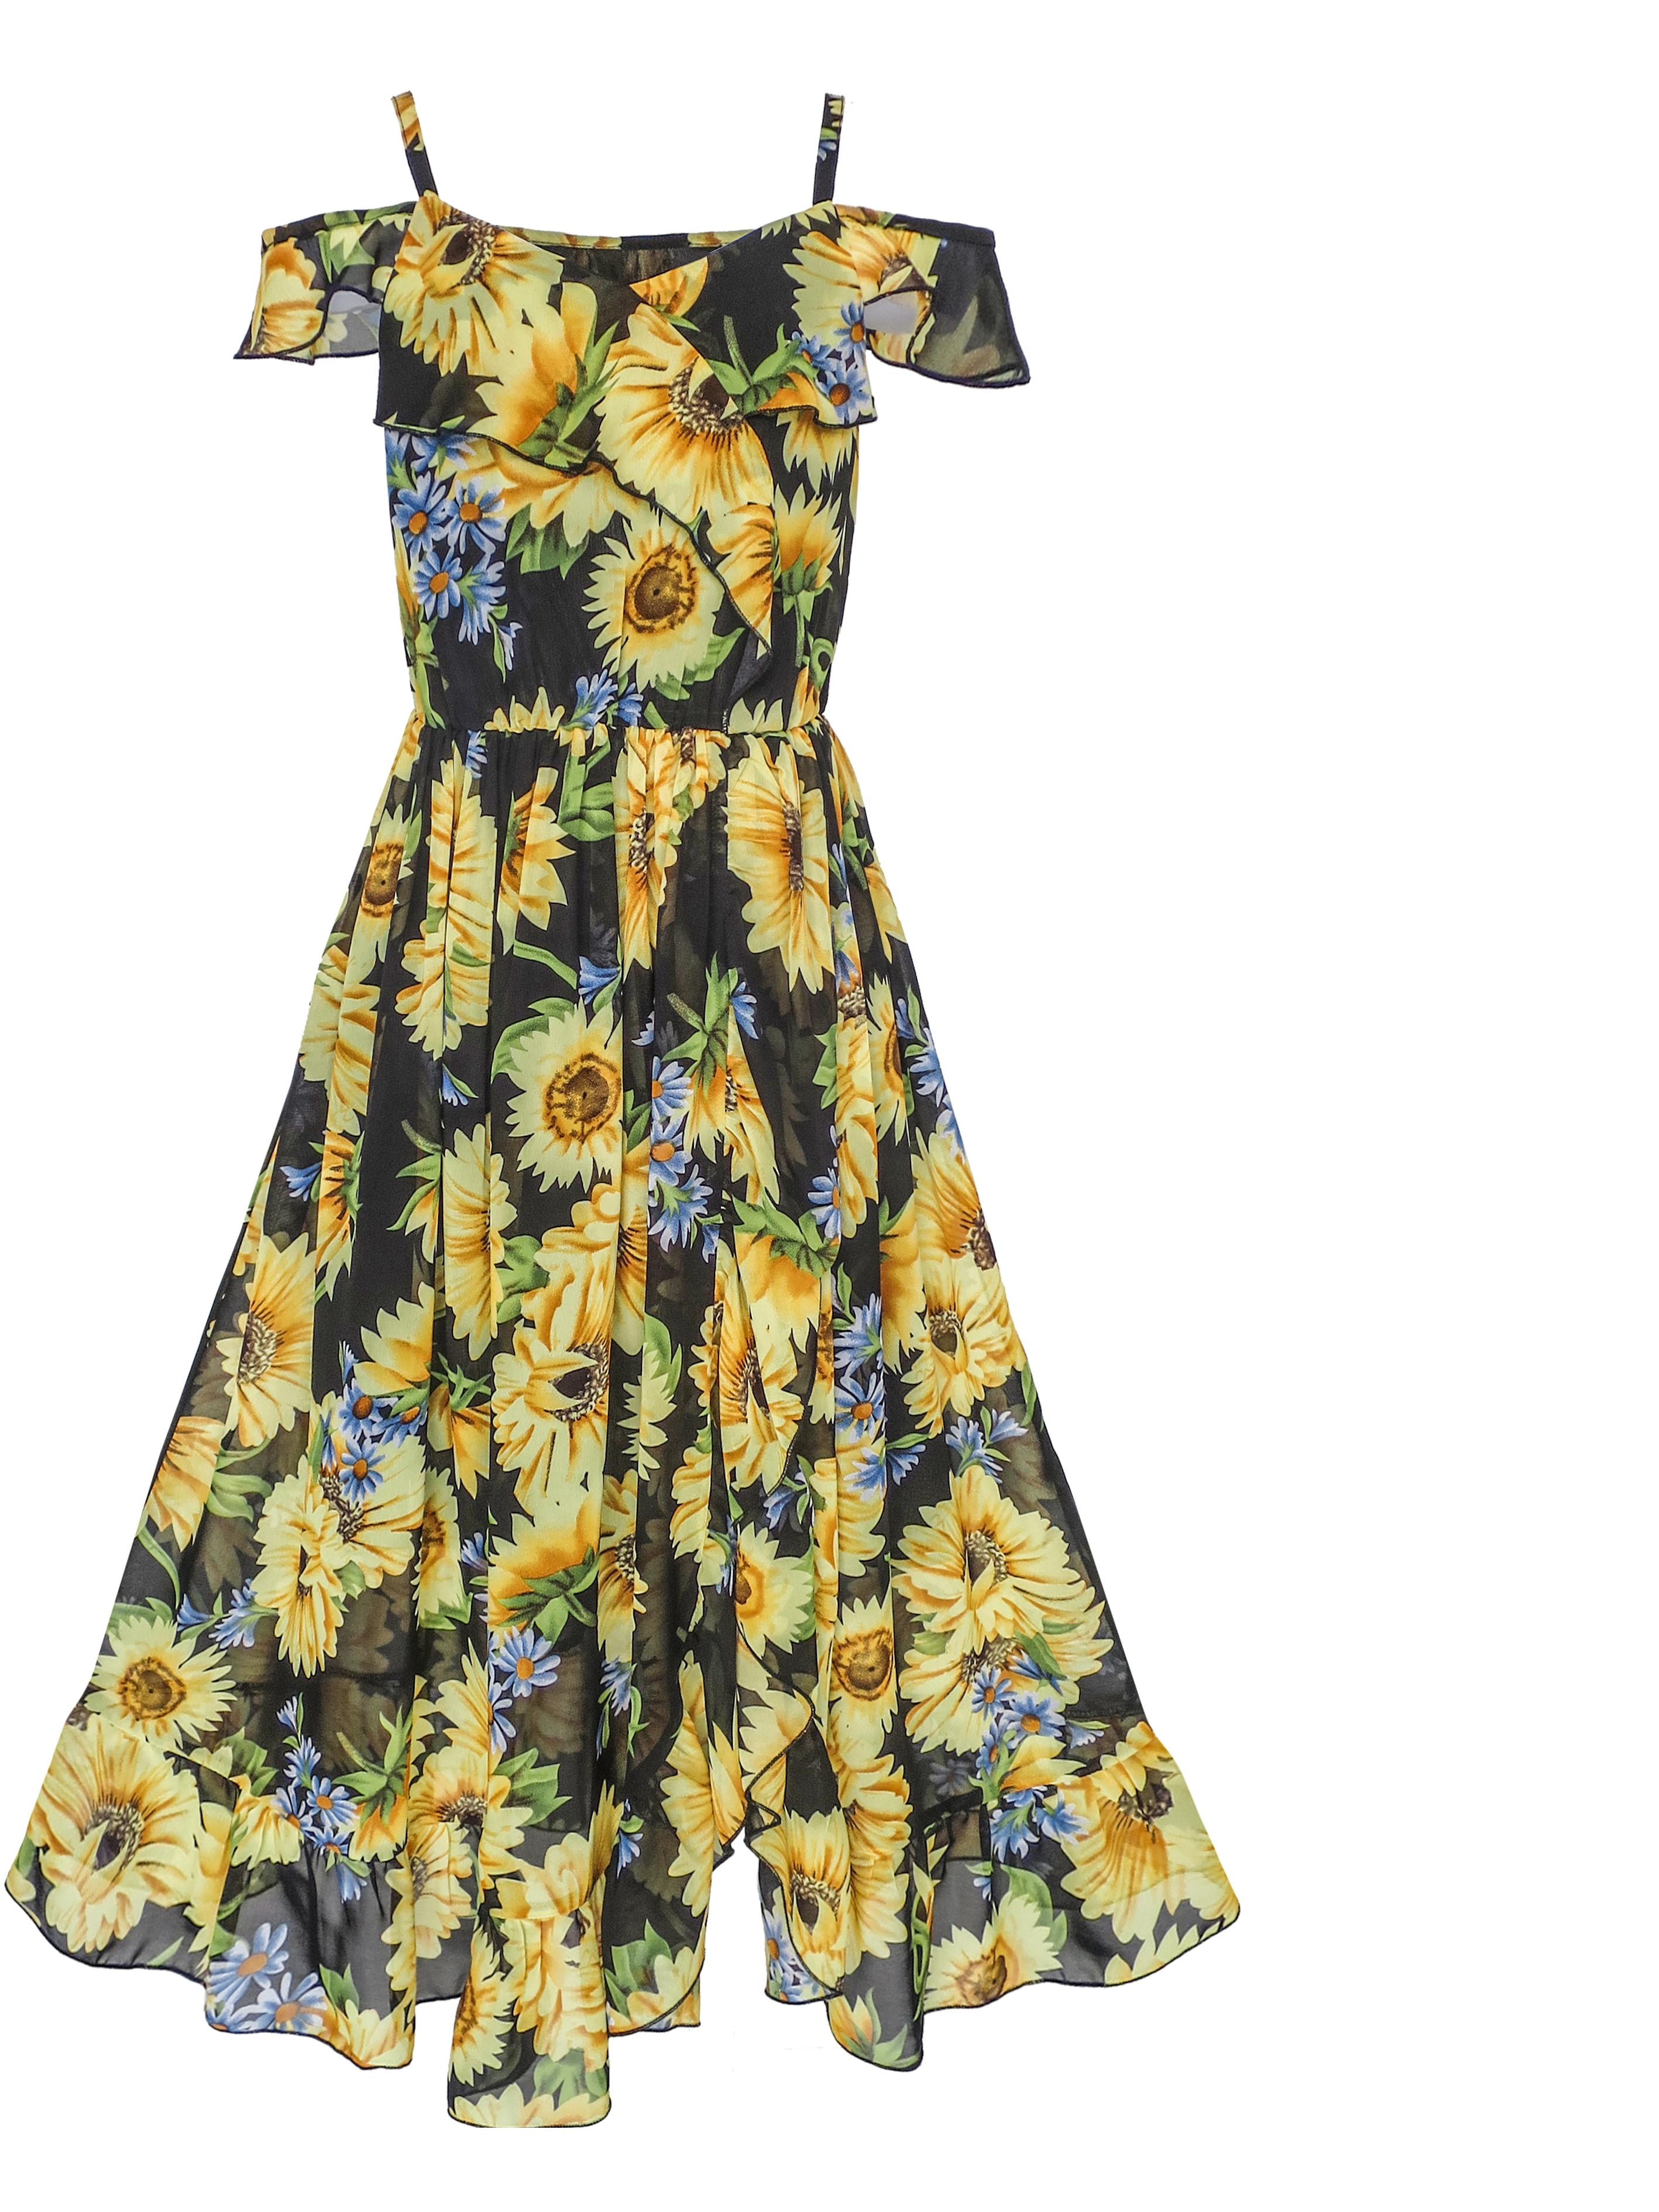 Walmart Sunflower Dress Flash Sales, 56 ...